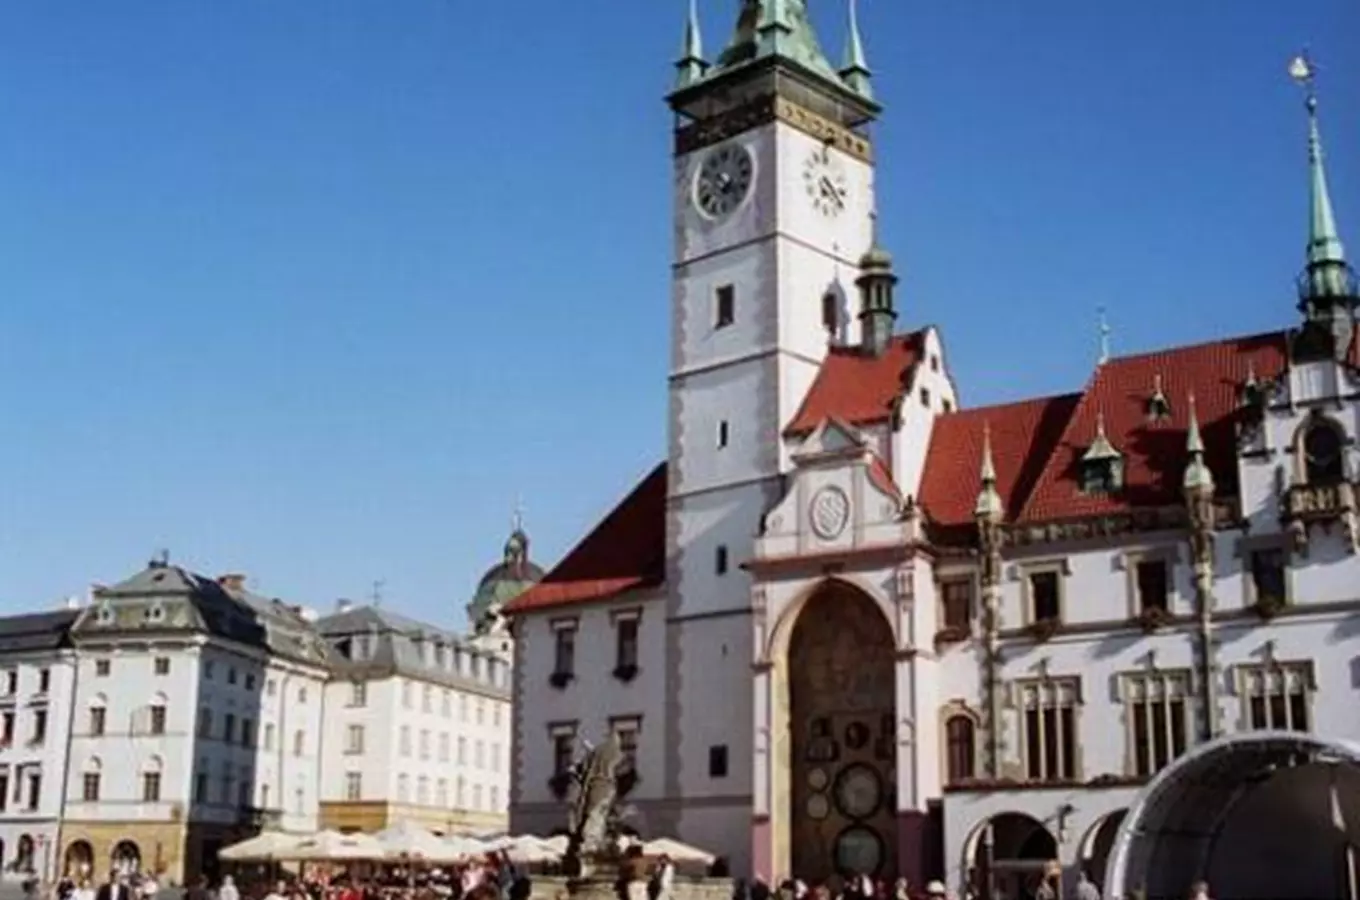 Za umením moderním i tisíc let starým se vydejte do Olomouce